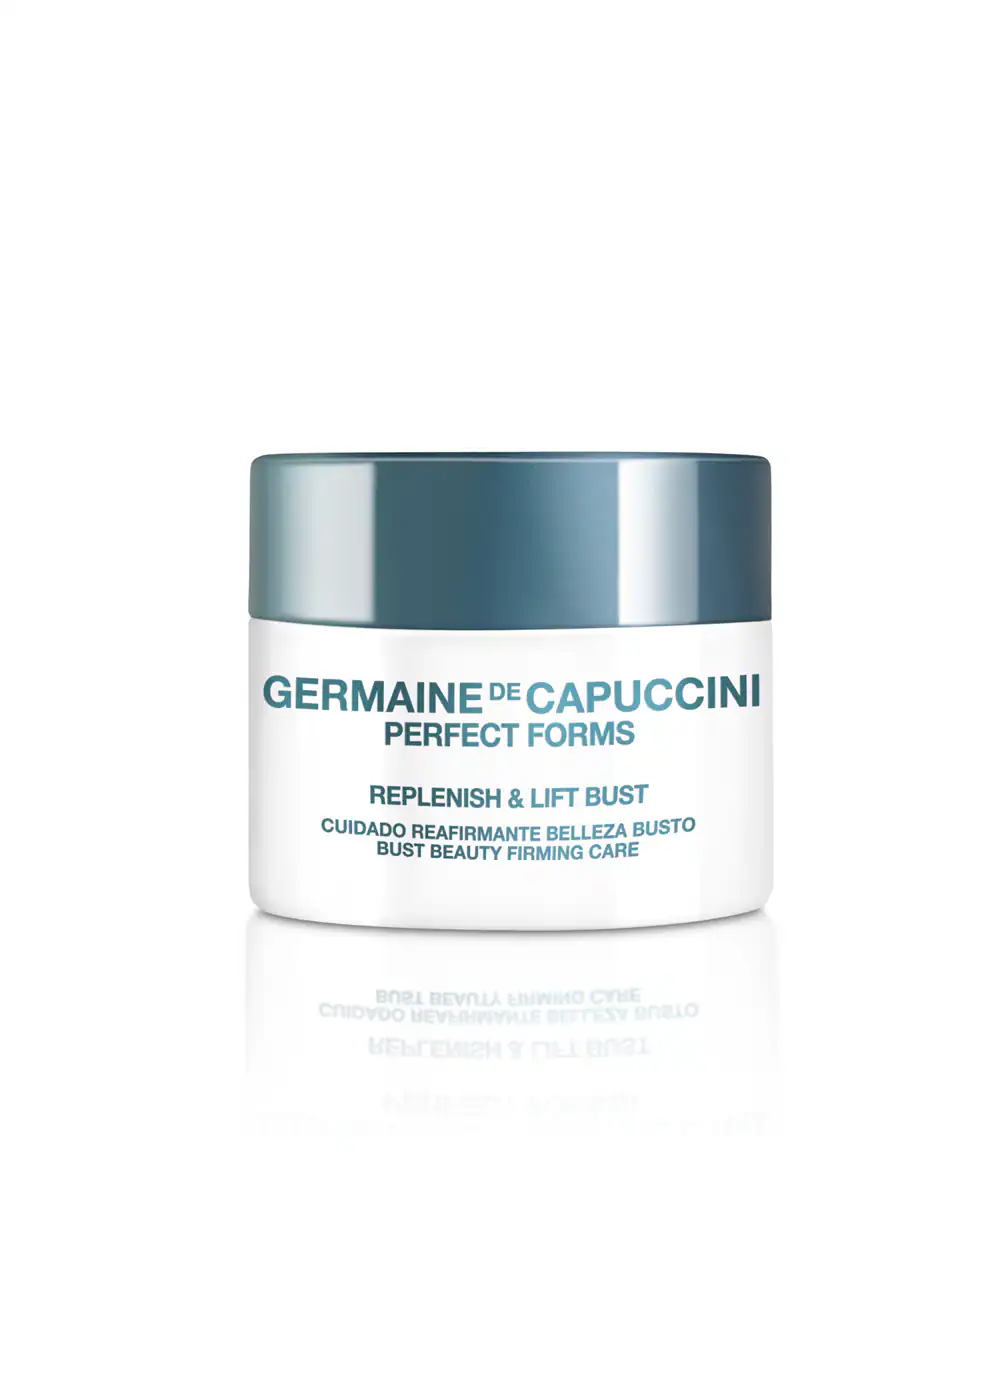 Cremas reafirmantes para el pecho: Replenish & Lift Bust de Gernaine de Capuccini